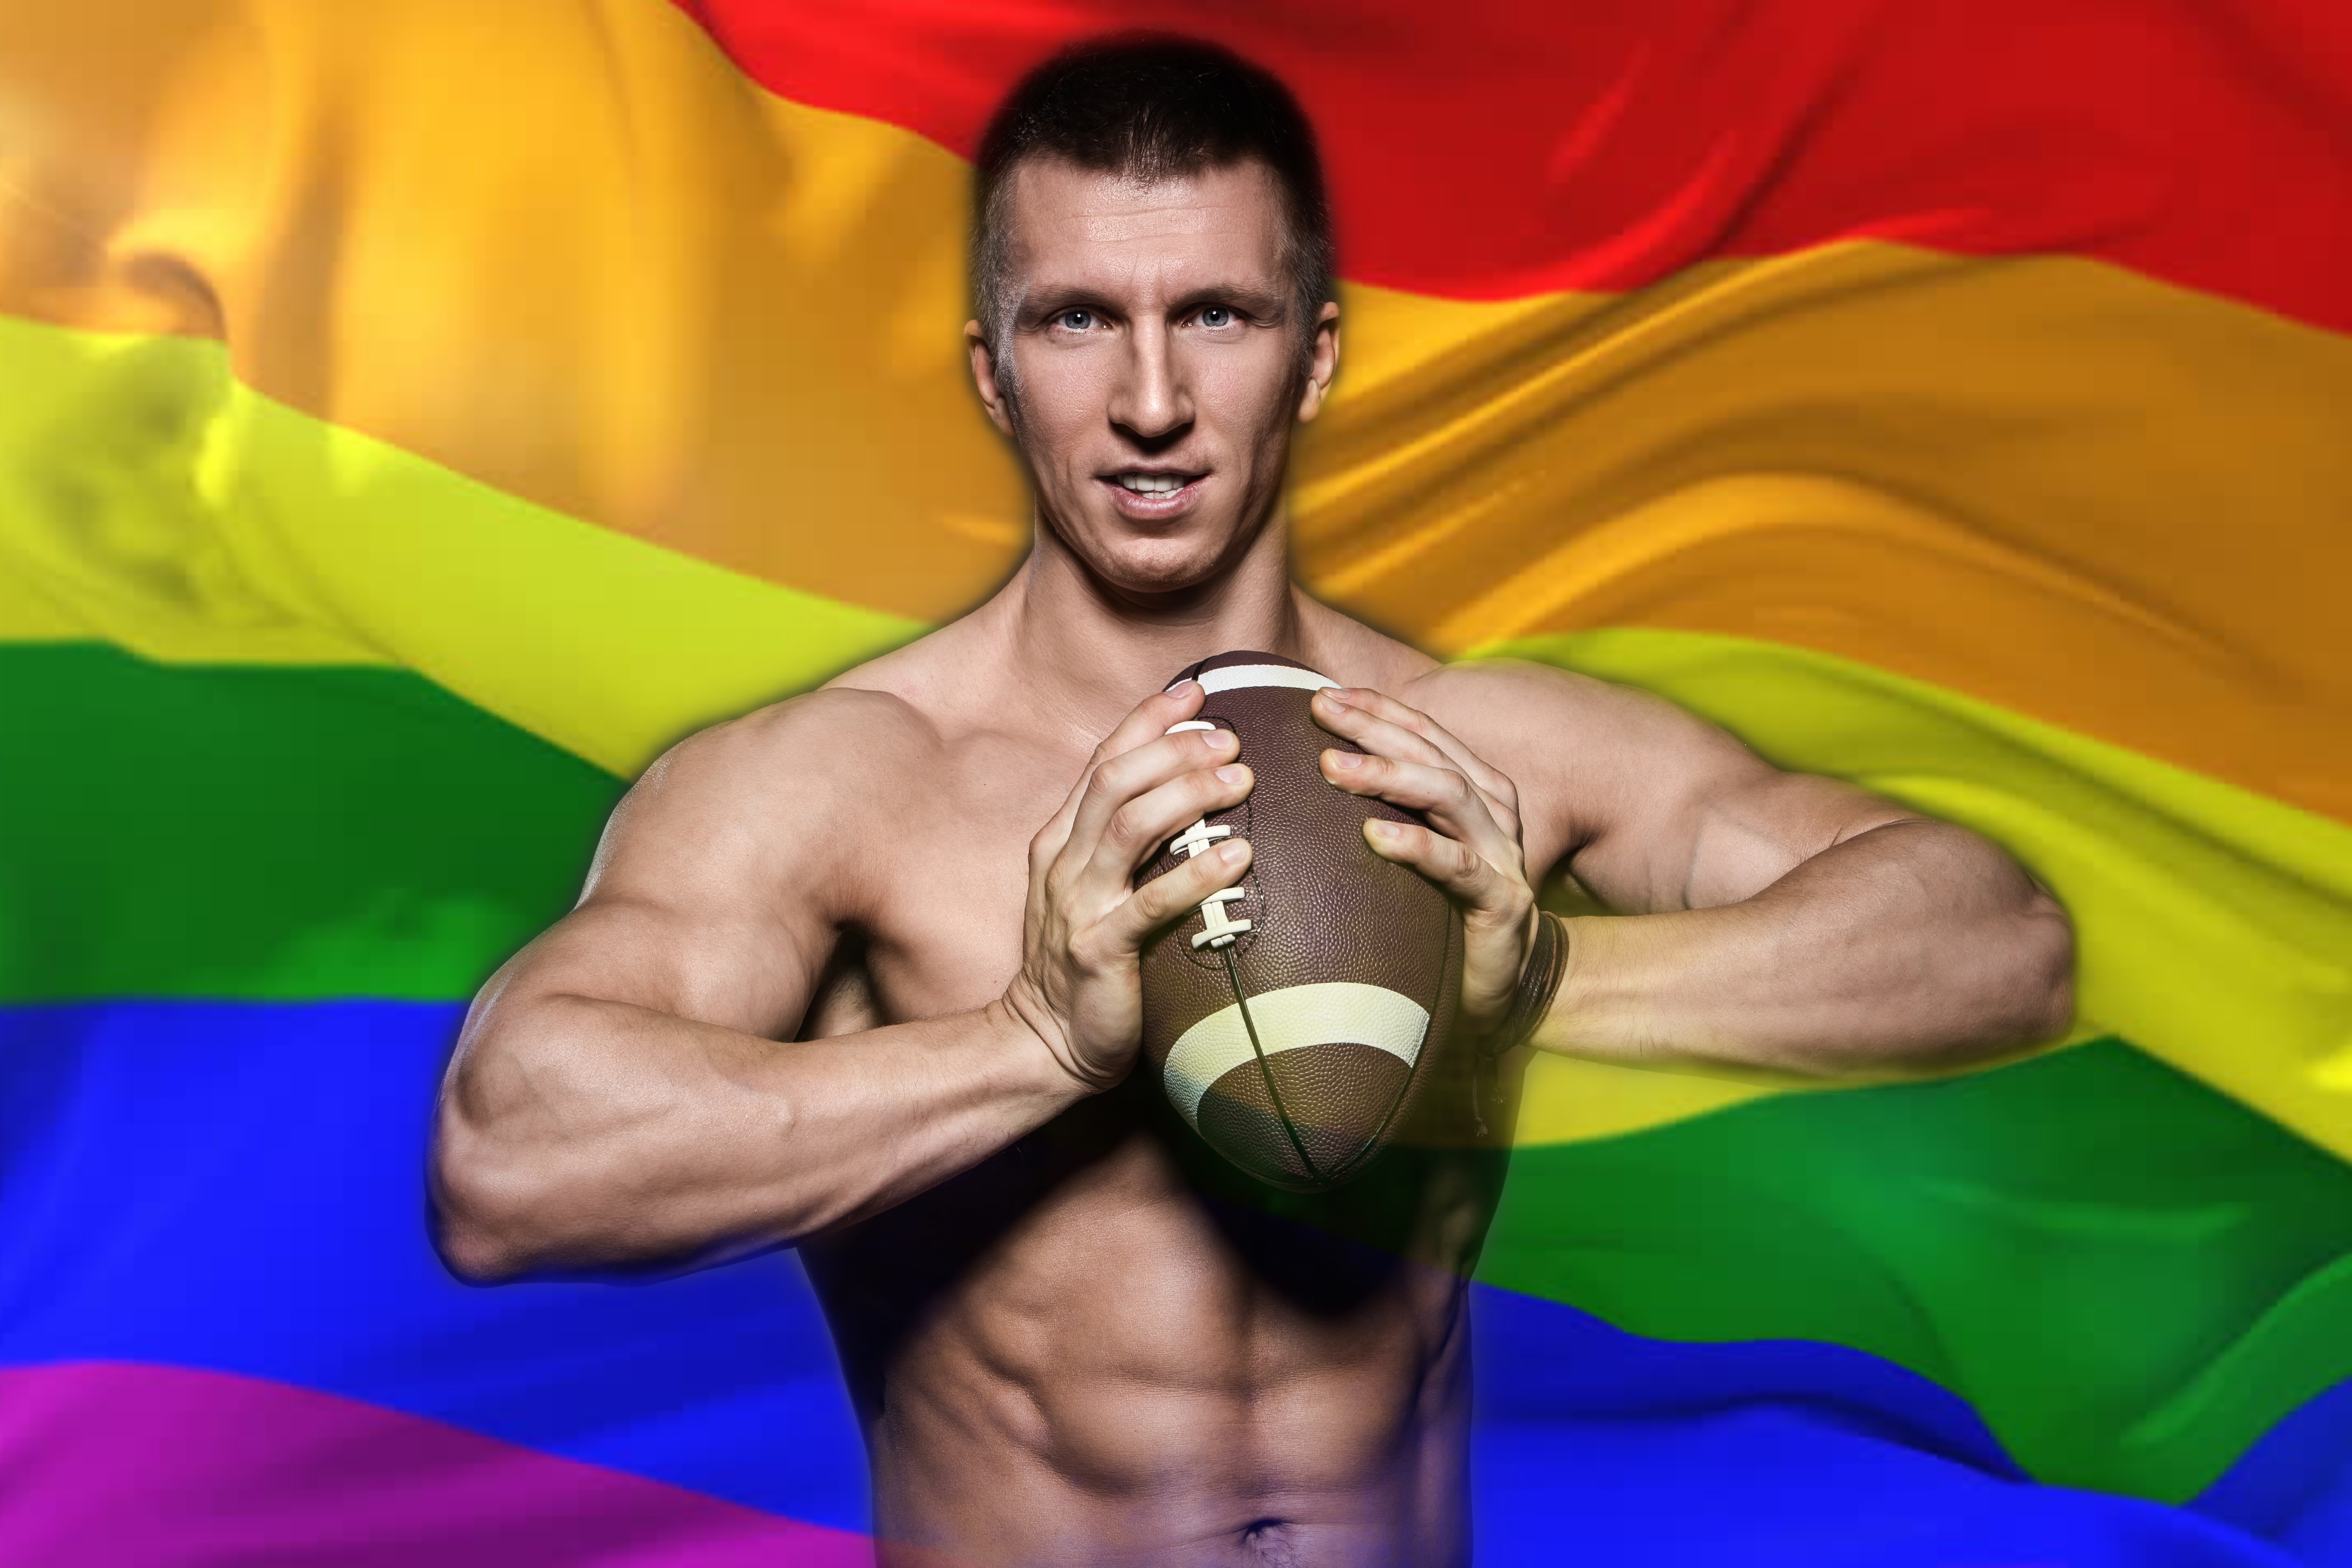 Este jugador de la NFL dice que hay al menos un gay en cada equipo de fútbol profesional